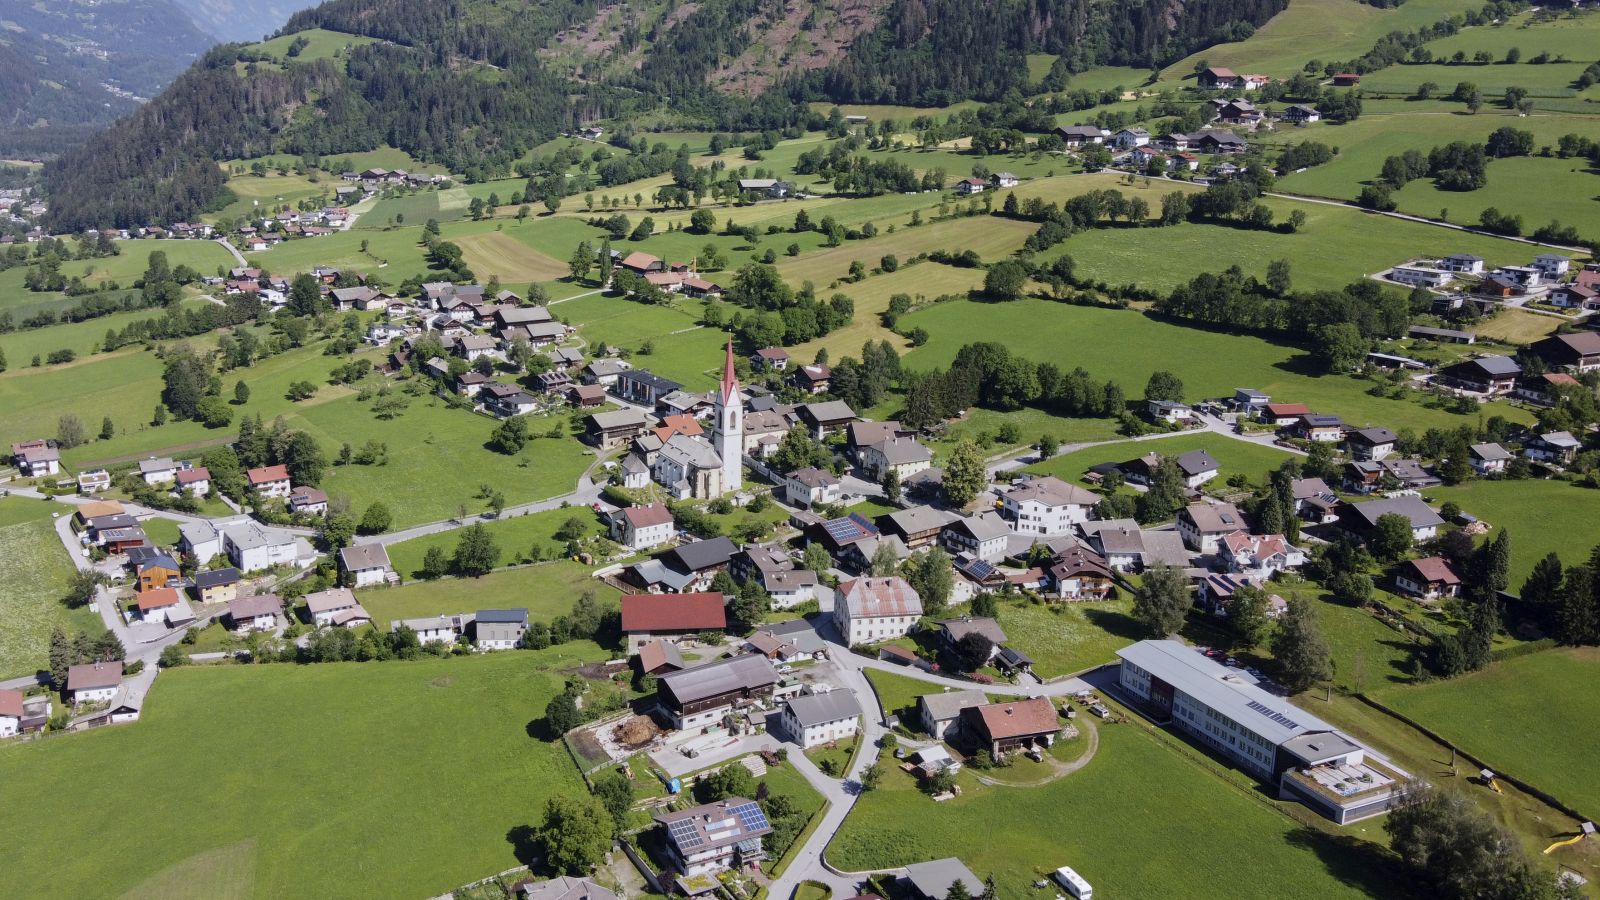 Luftaufnahme der Gemeinde Oberlienz mit der Kirche im Zentrum des Bildes